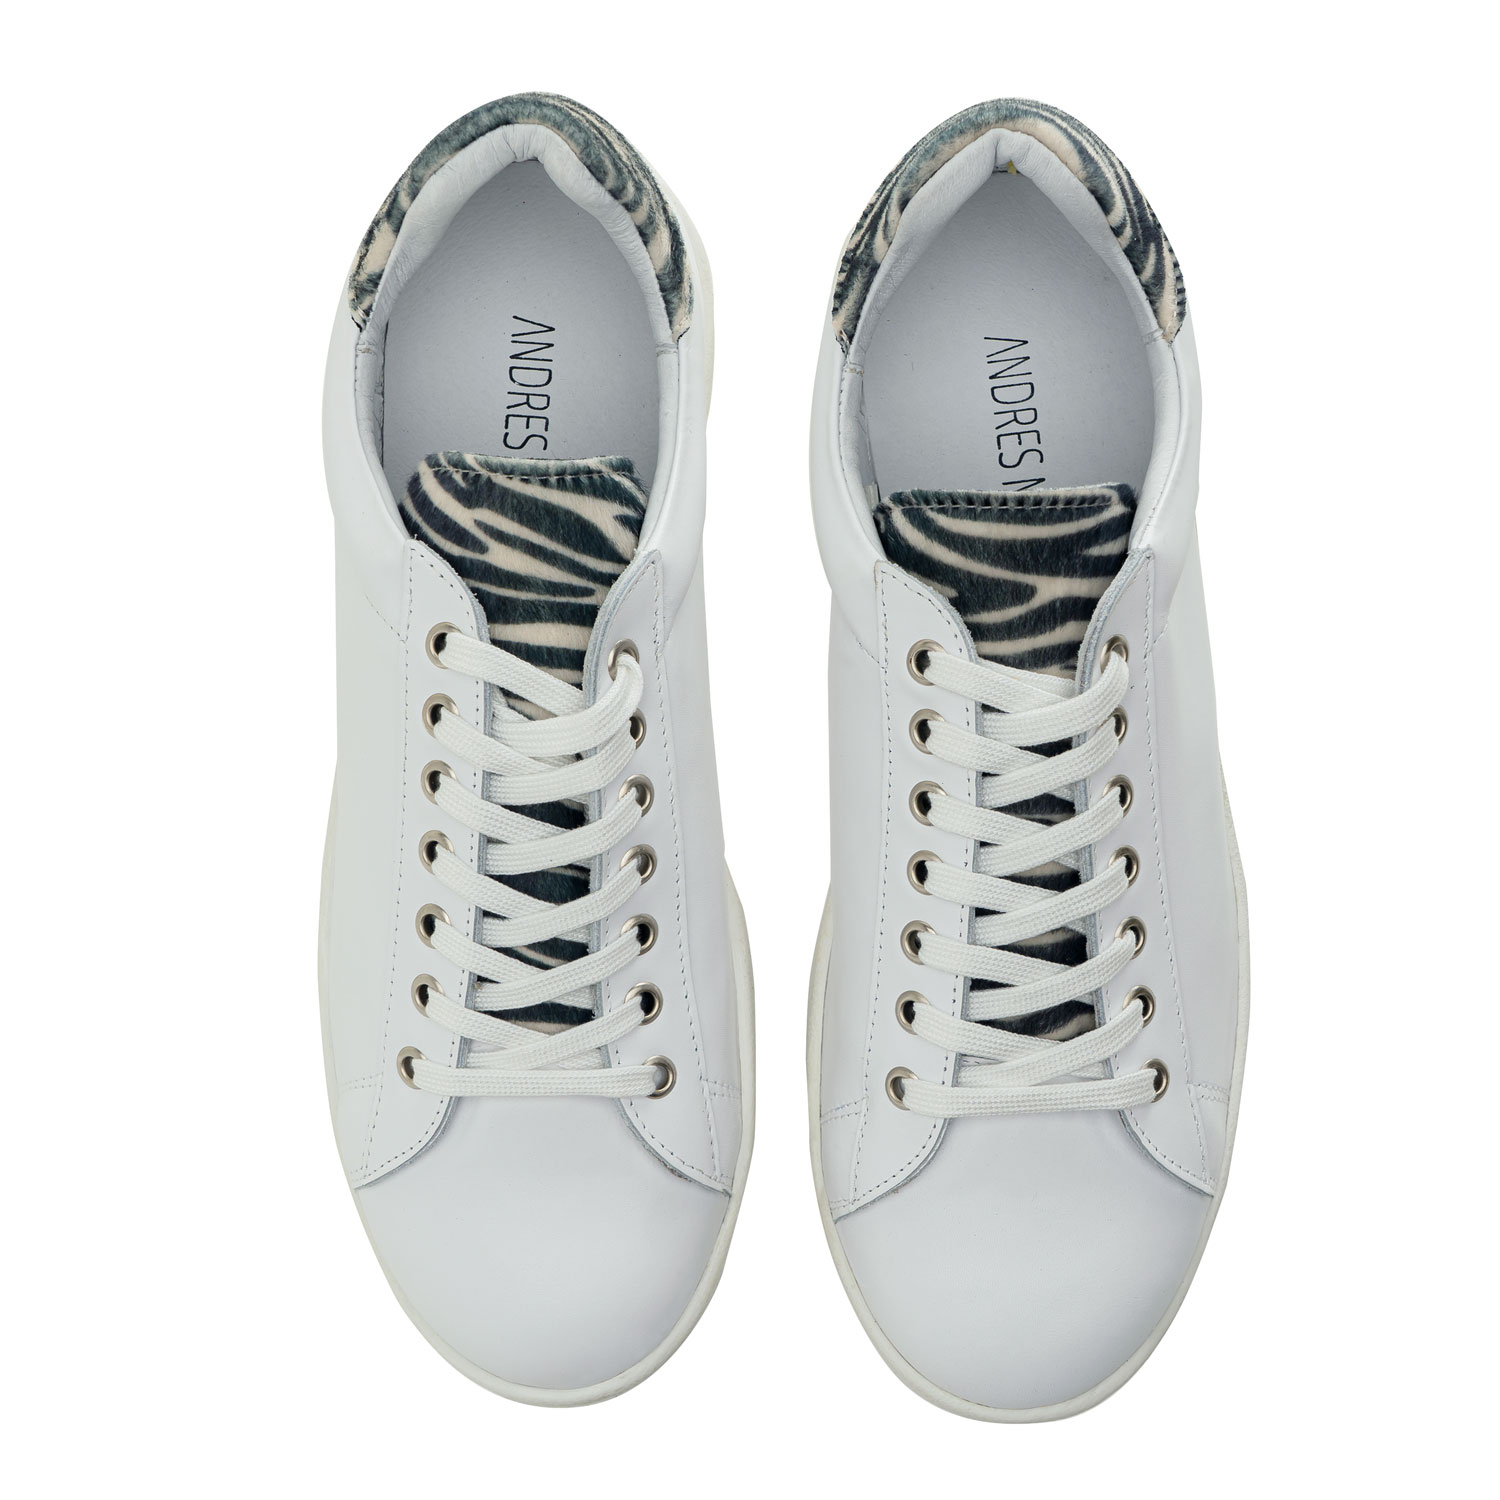 Sneaker aus hochwertigem Leder in weiß mit Zebramusterung - MADE in SPAIN 